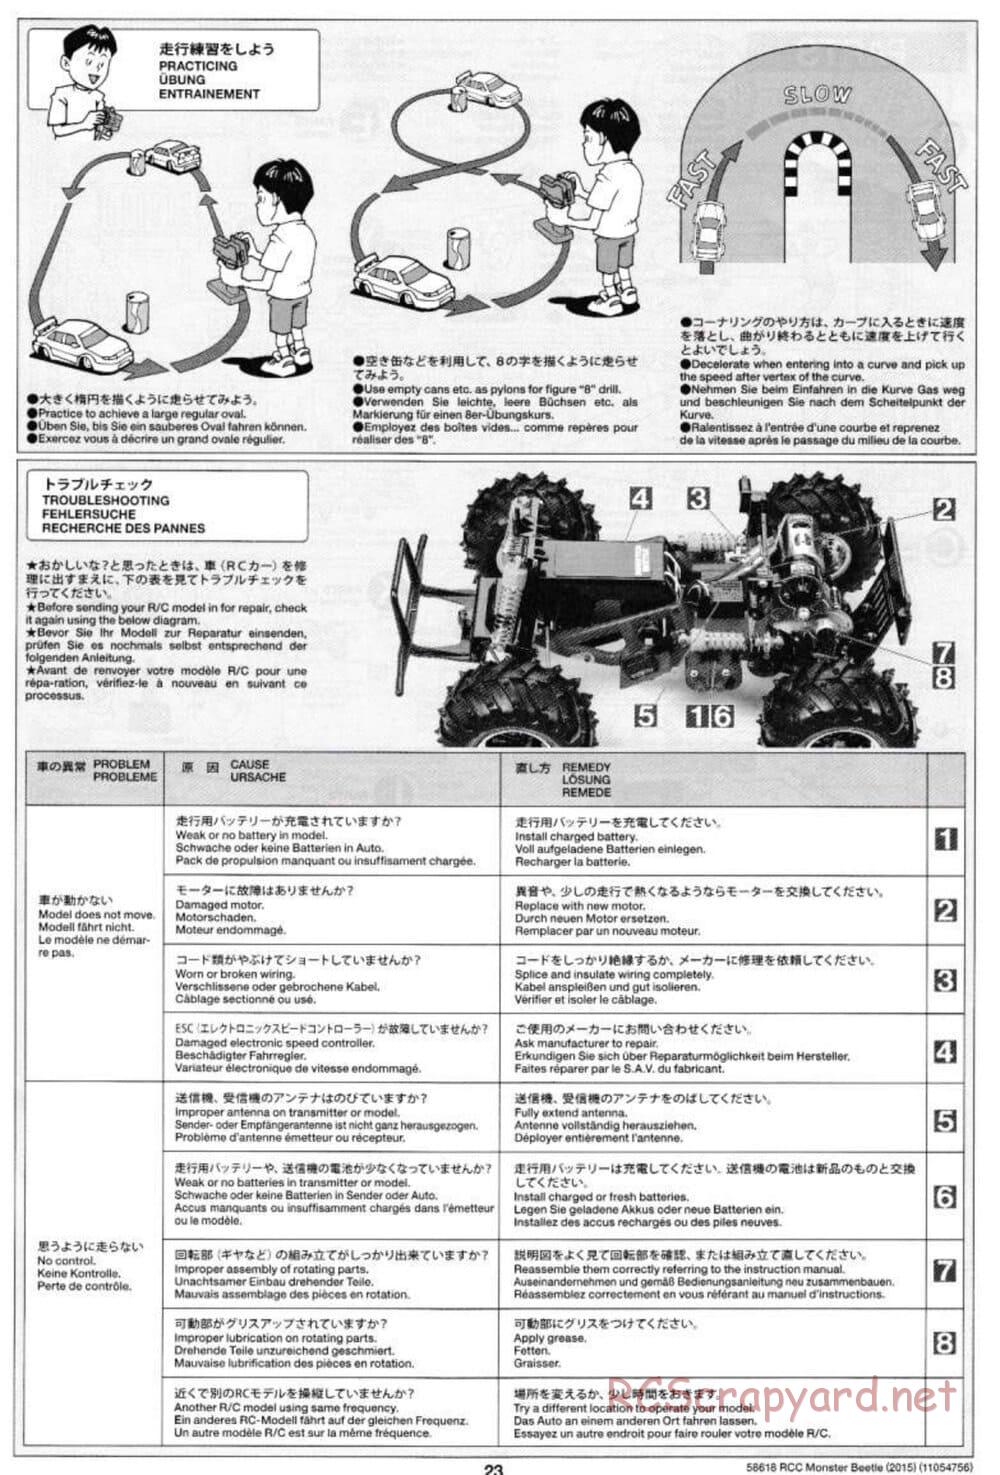 Tamiya - Monster Beetle 2015 - ORV Chassis - Manual - Page 23